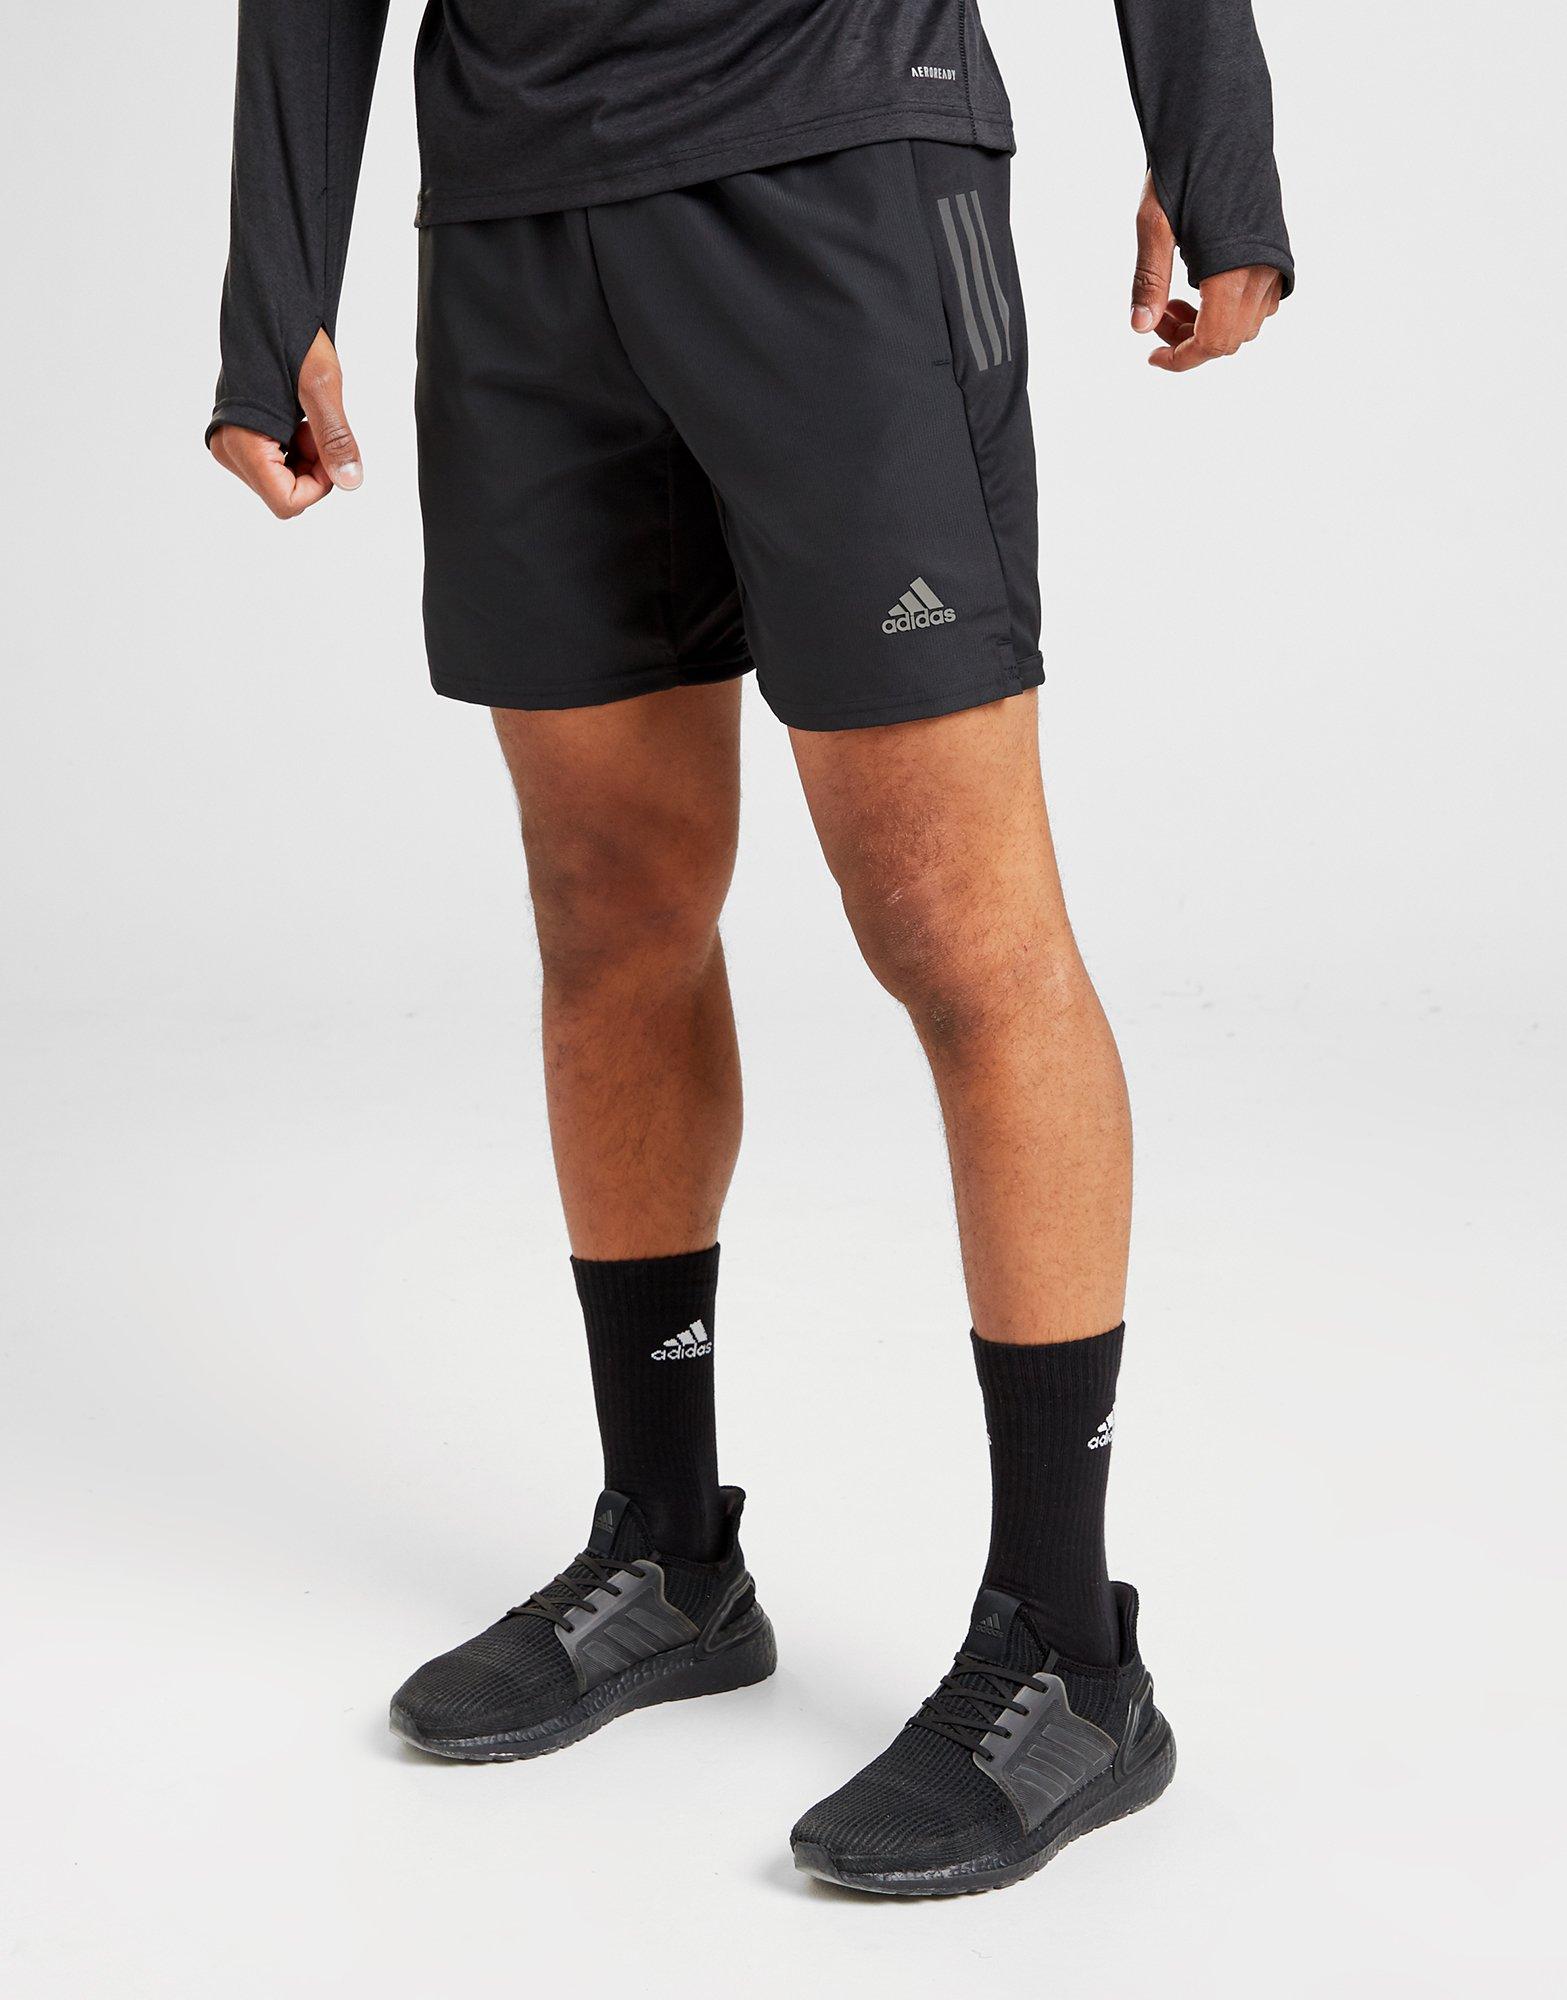 jd sports mens adidas shorts